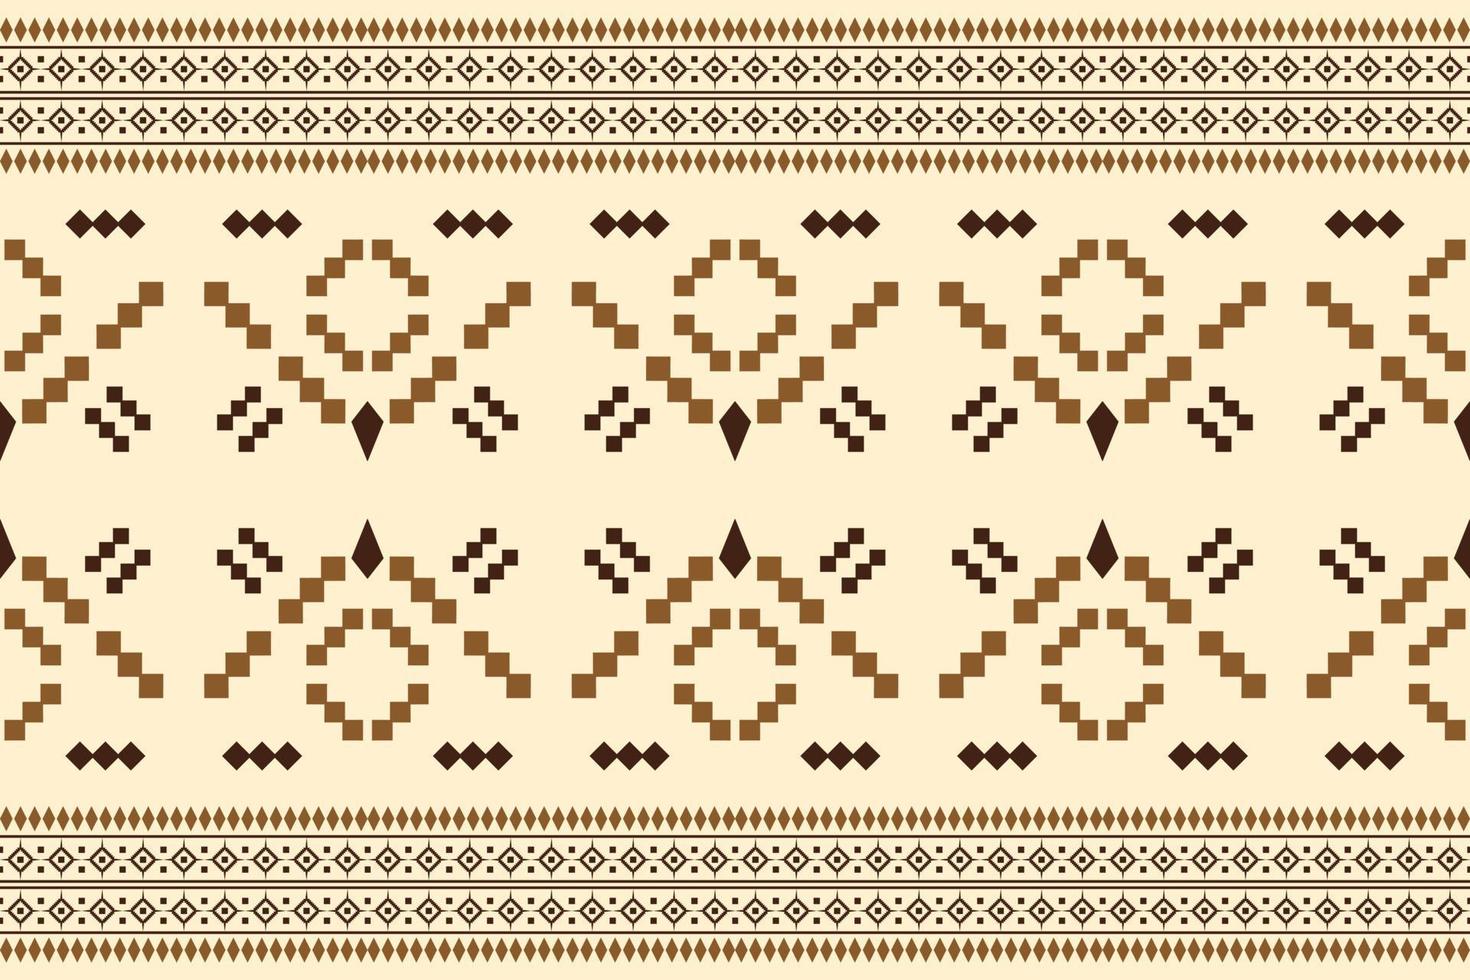 estilo geométrico padrão de tecido étnico. sarong asteca étnica oriental padrão fundo laranja tradicional. resumo,vetor,ilustração. use para textura, roupas, embrulhos, decoração, carpete. vetor